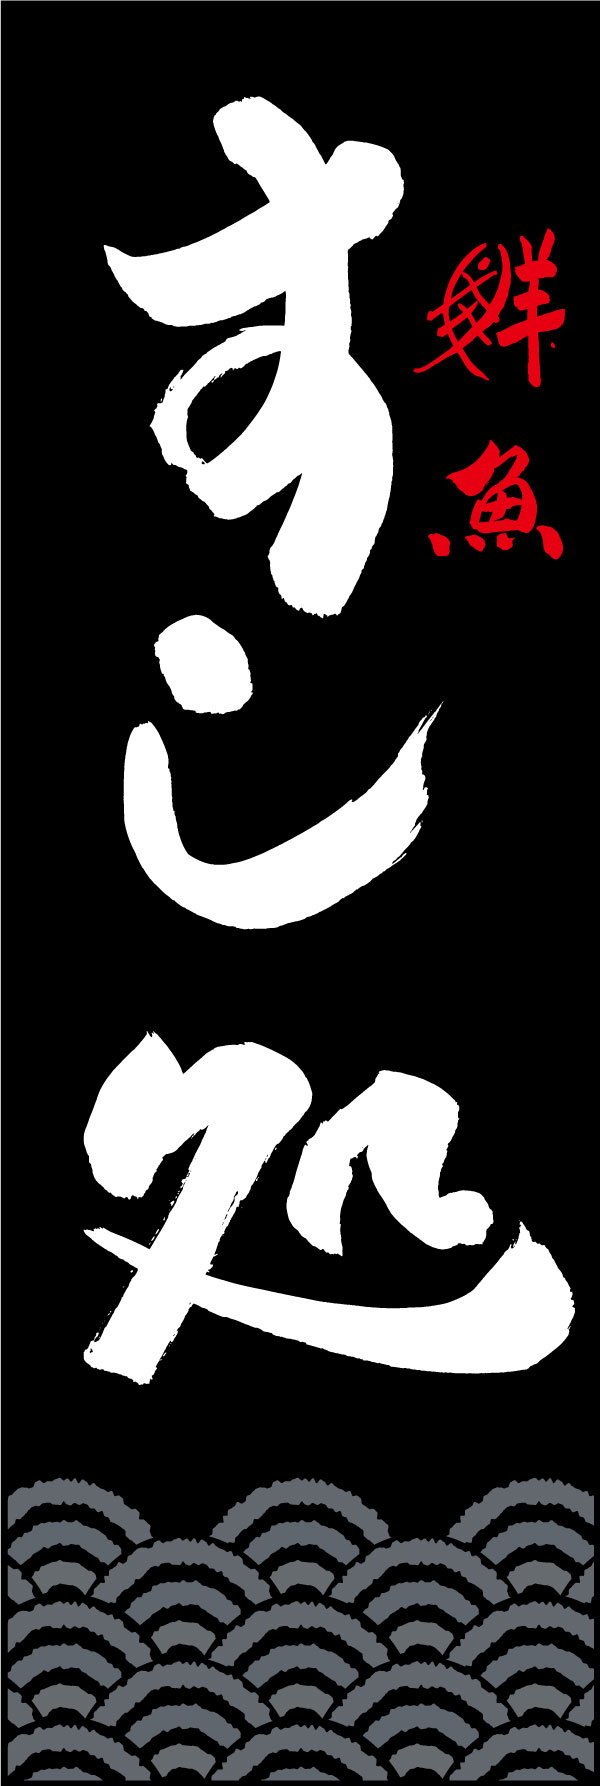 すし処 144_02 「すし処」ののぼりです。江戸文字職人 加藤木大介氏による、手書きの筆文字です。完全書き下ろし、唯一無二ののぼりは当店だけのオリジナル商品です。（Y.M）